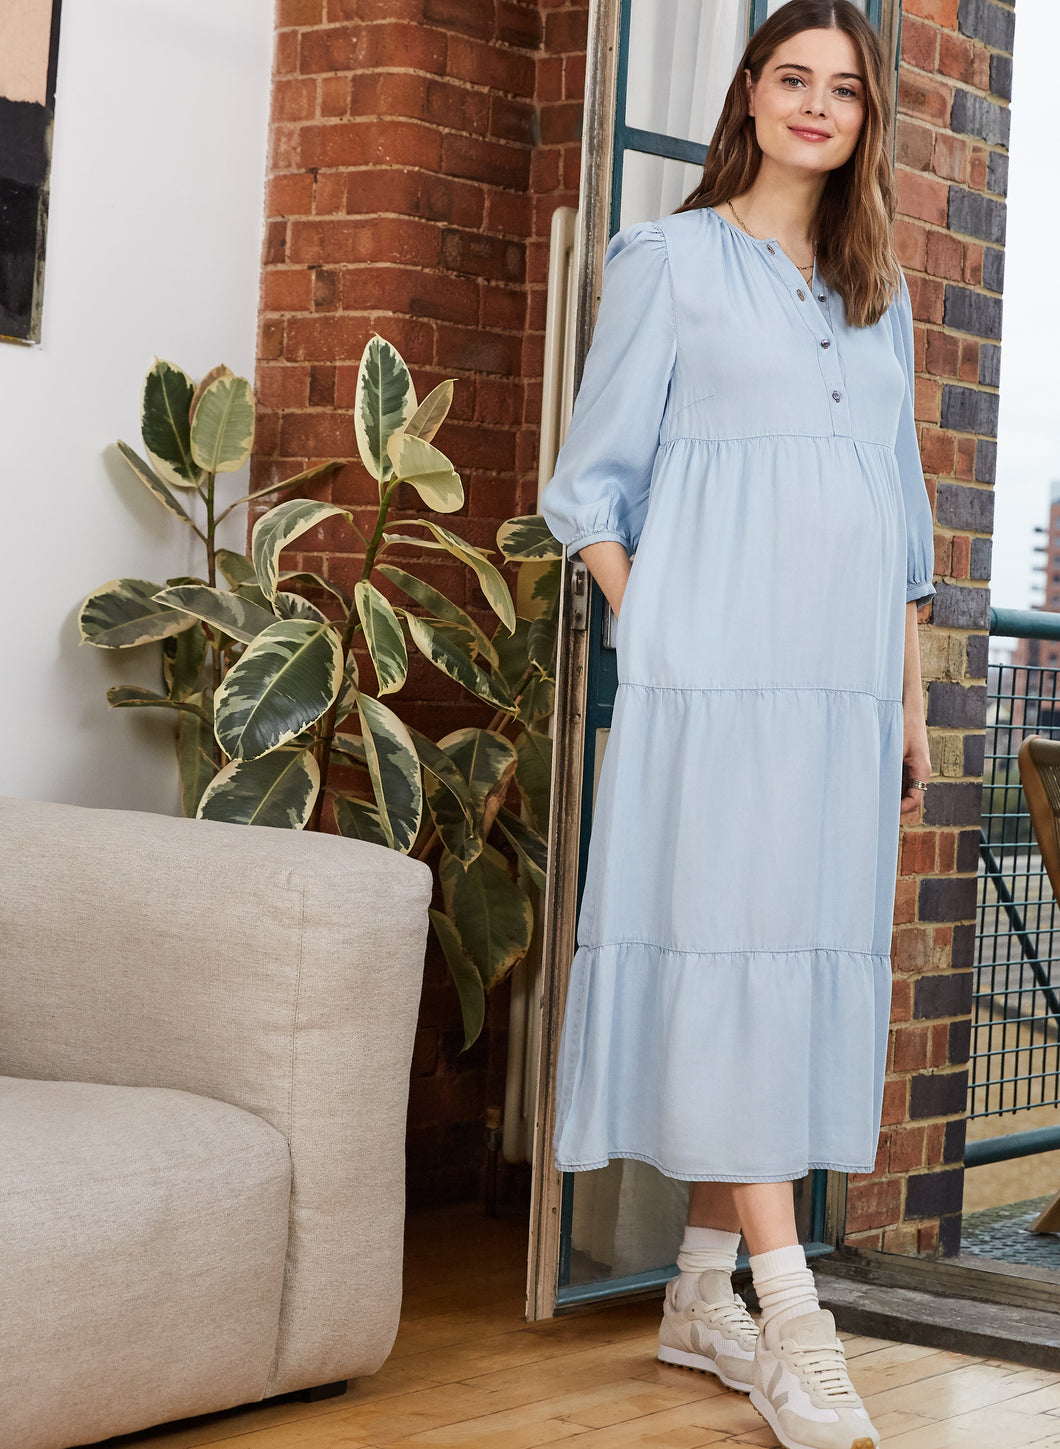 Isabella Oliver Umstandskleid hellblau mit fließendem Volant bei Mutterkleid online kaufen oder monatlich mieten, Knöpfe am Oberteil ermöglichen das Stillen